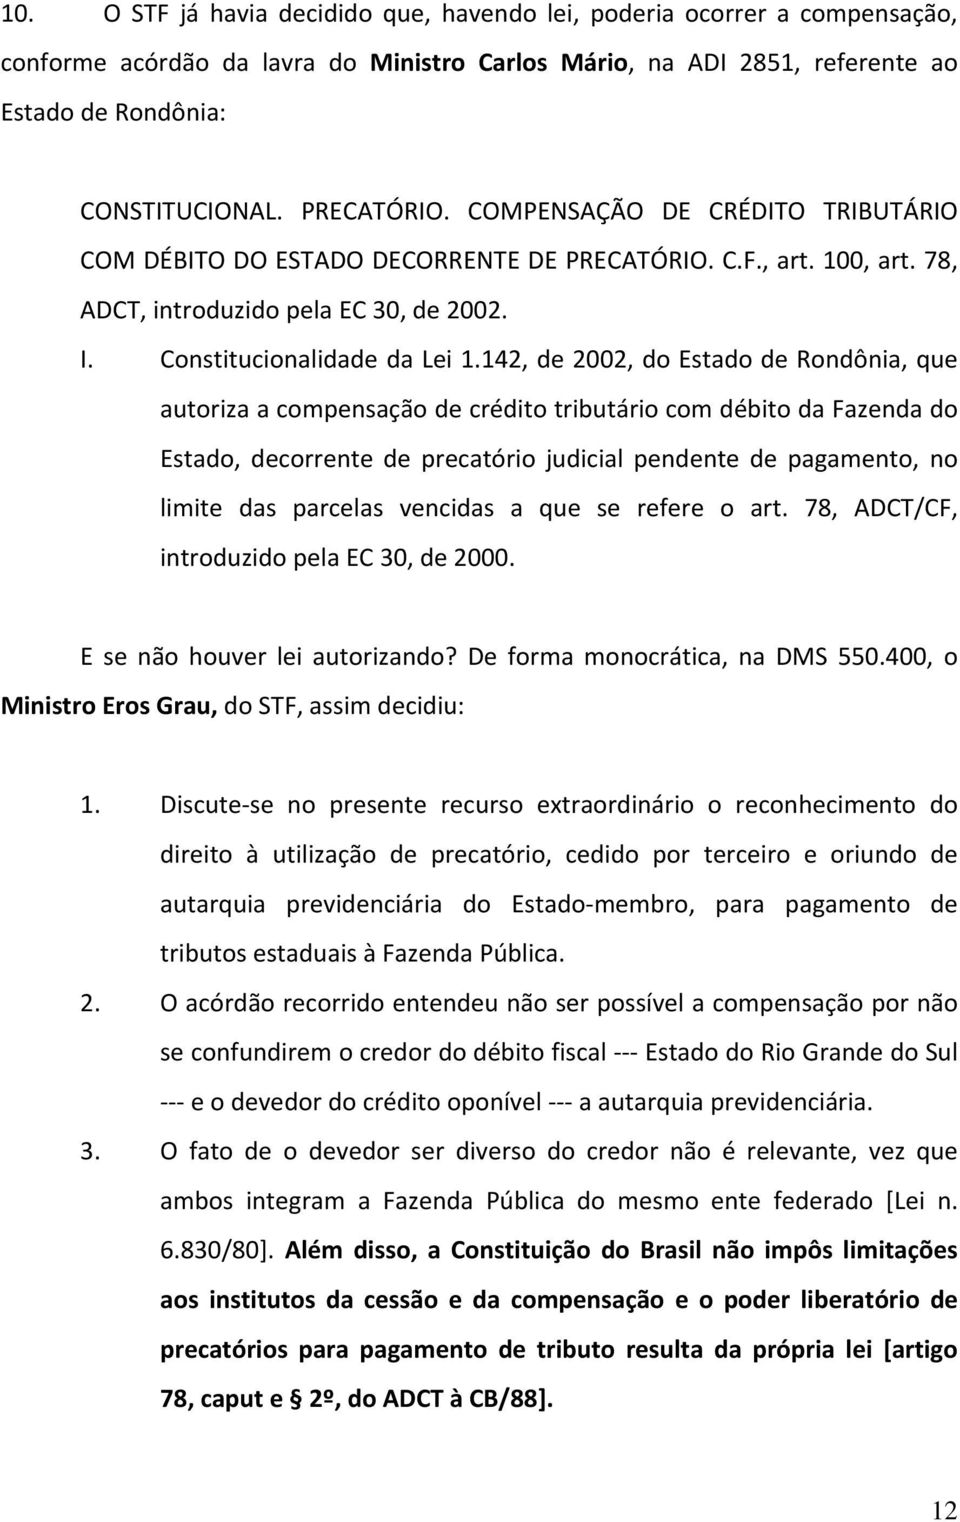 142, de 2002, do Estado de Rondônia, que autoriza a compensação de crédito tributário com débito da Fazenda do Estado, decorrente de precatório judicial pendente de pagamento, no limite das parcelas